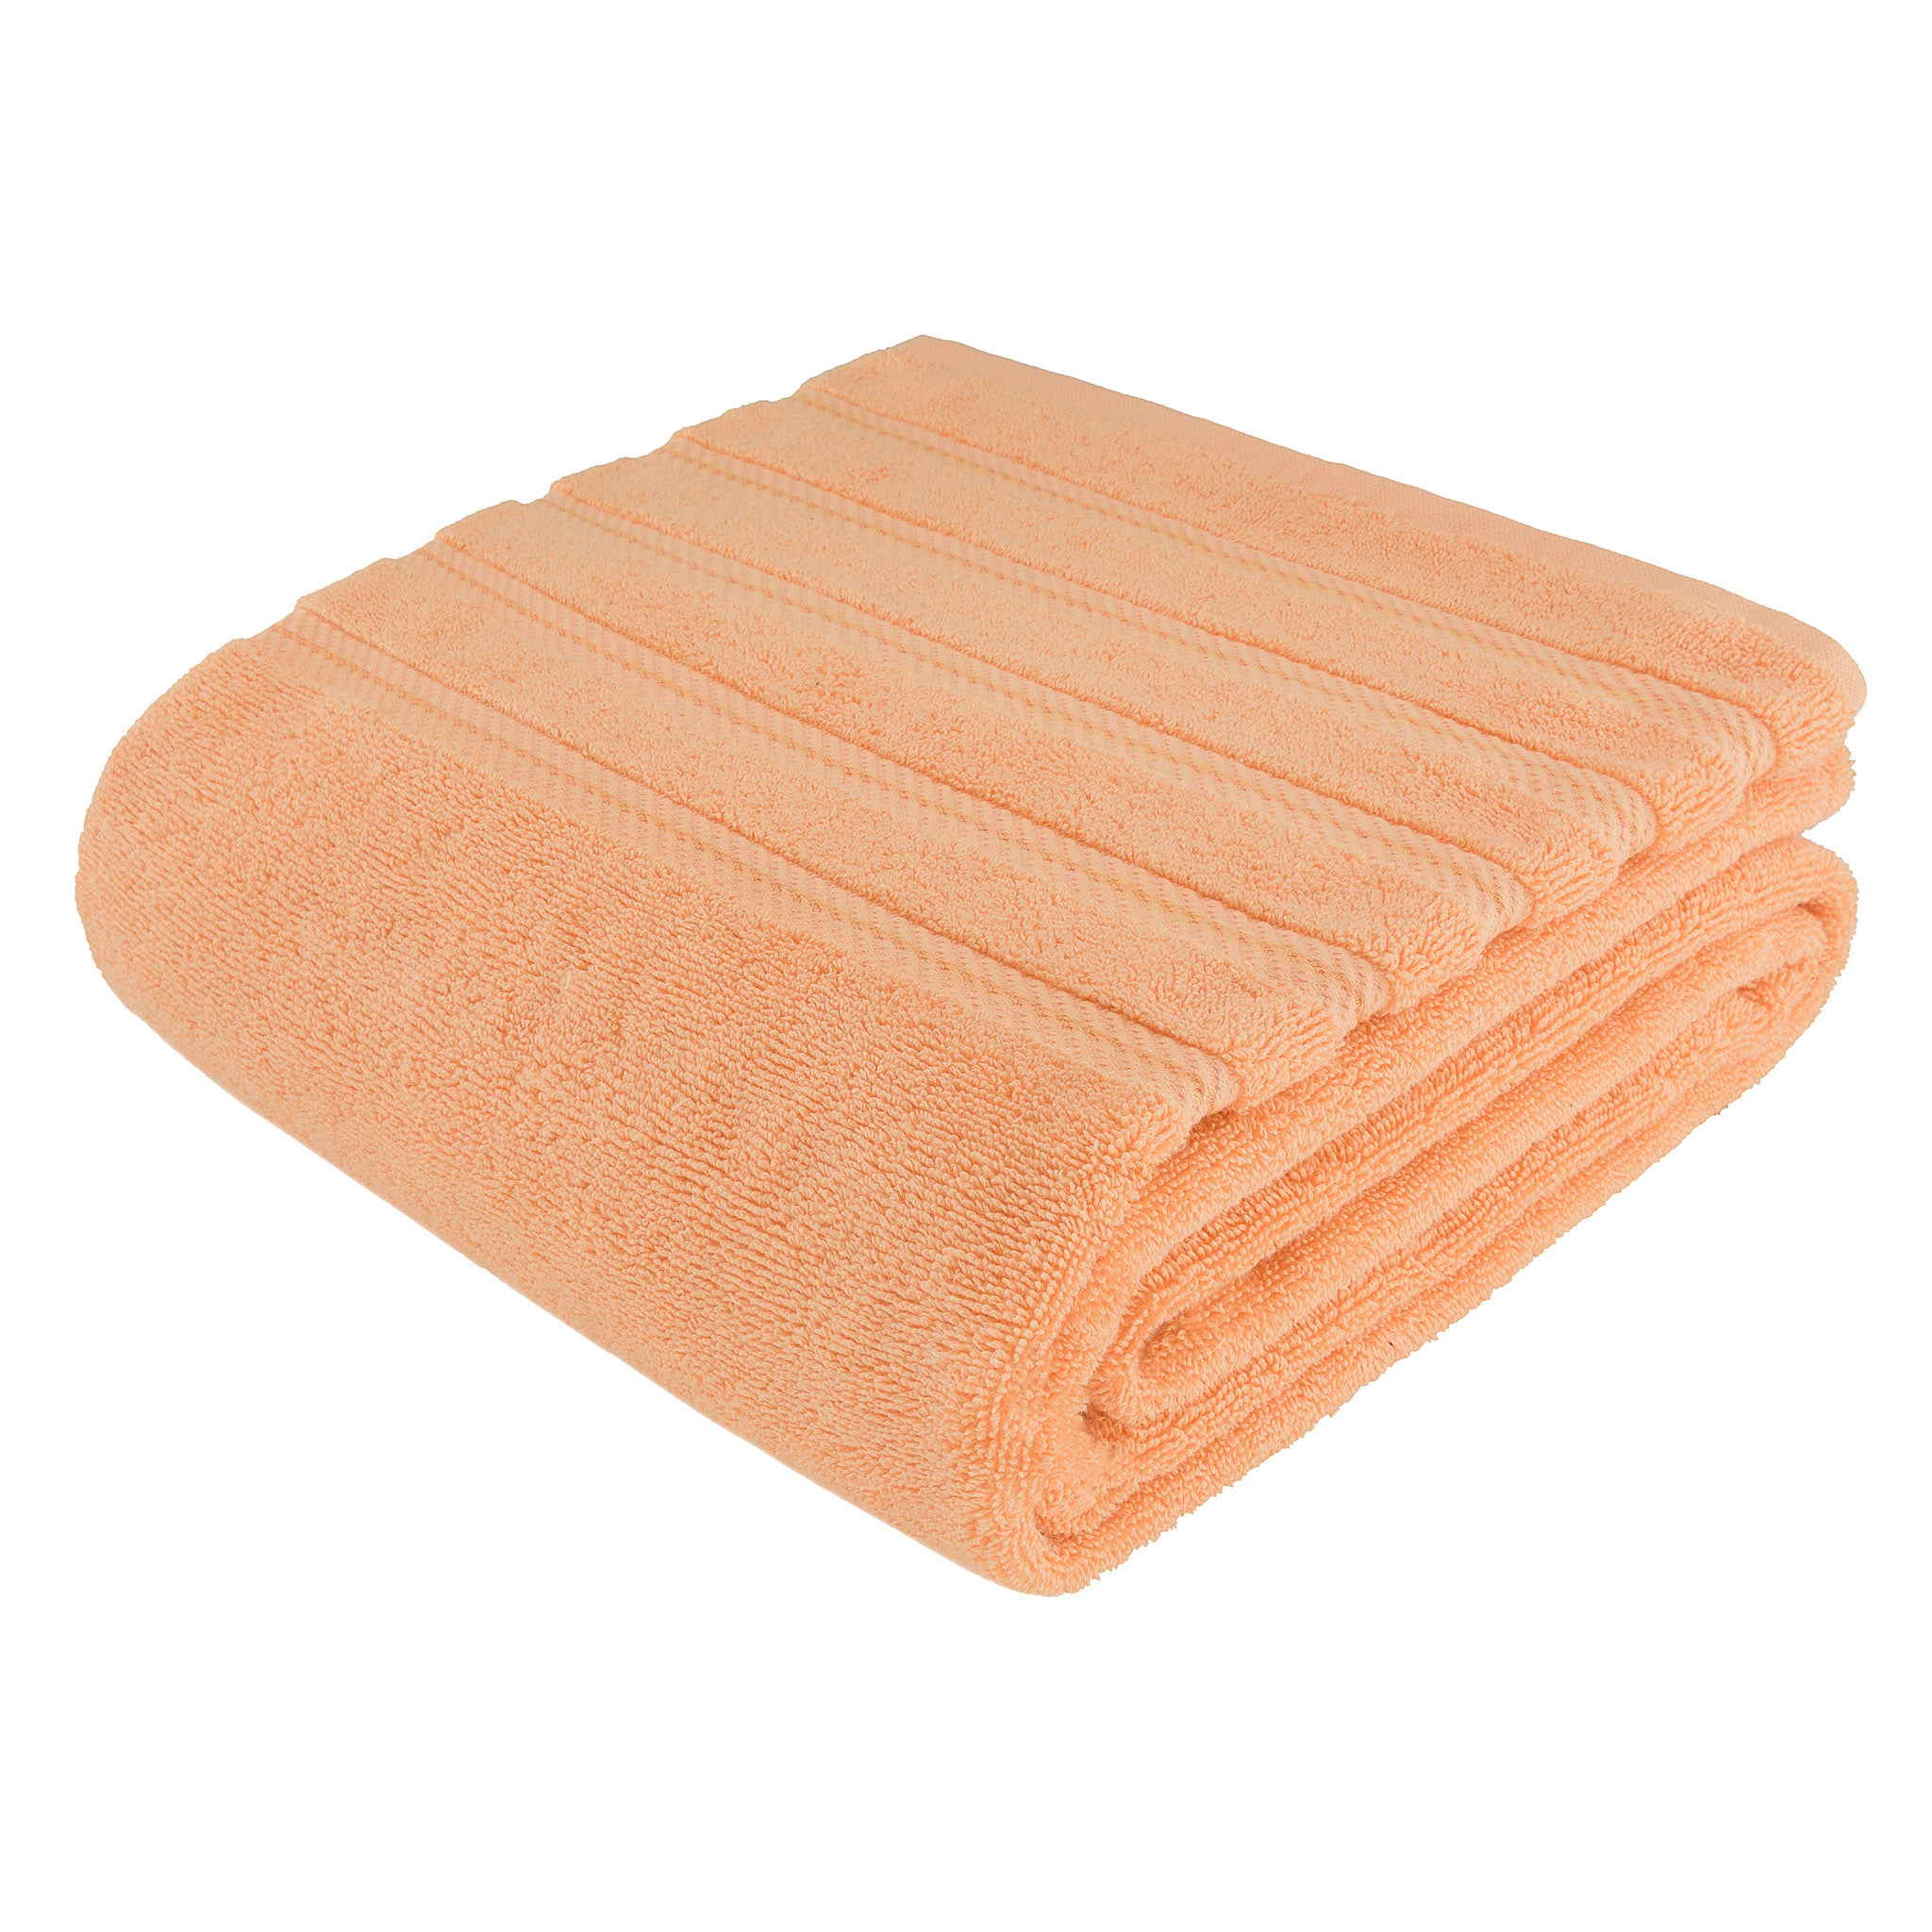 American Soft Linen 35x70 Inch 100% Turkish Cotton Jumbo Bath Sheet malibu-peach-7